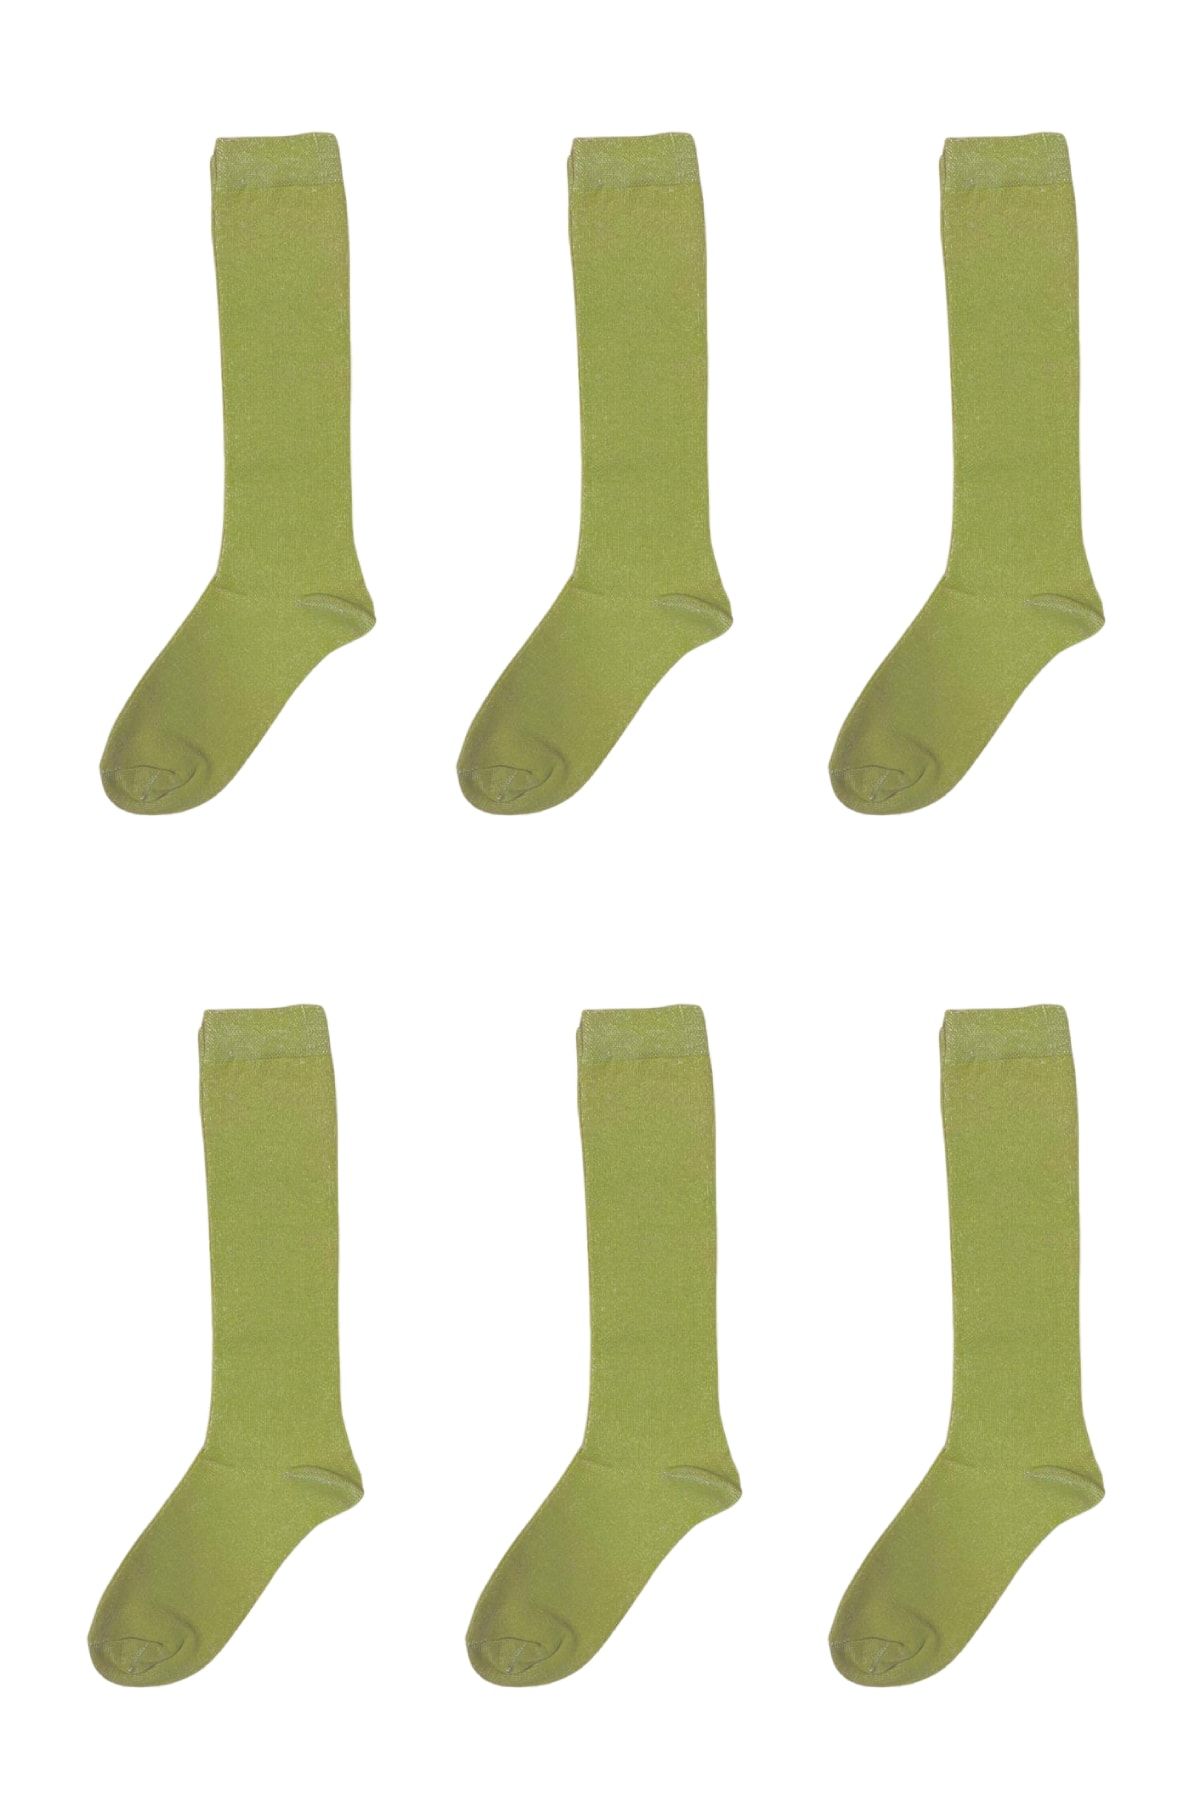 Silyon Askeri Giyim Asker Çorabı 6'lı Acemi Asker Bedelli Asker Çorap